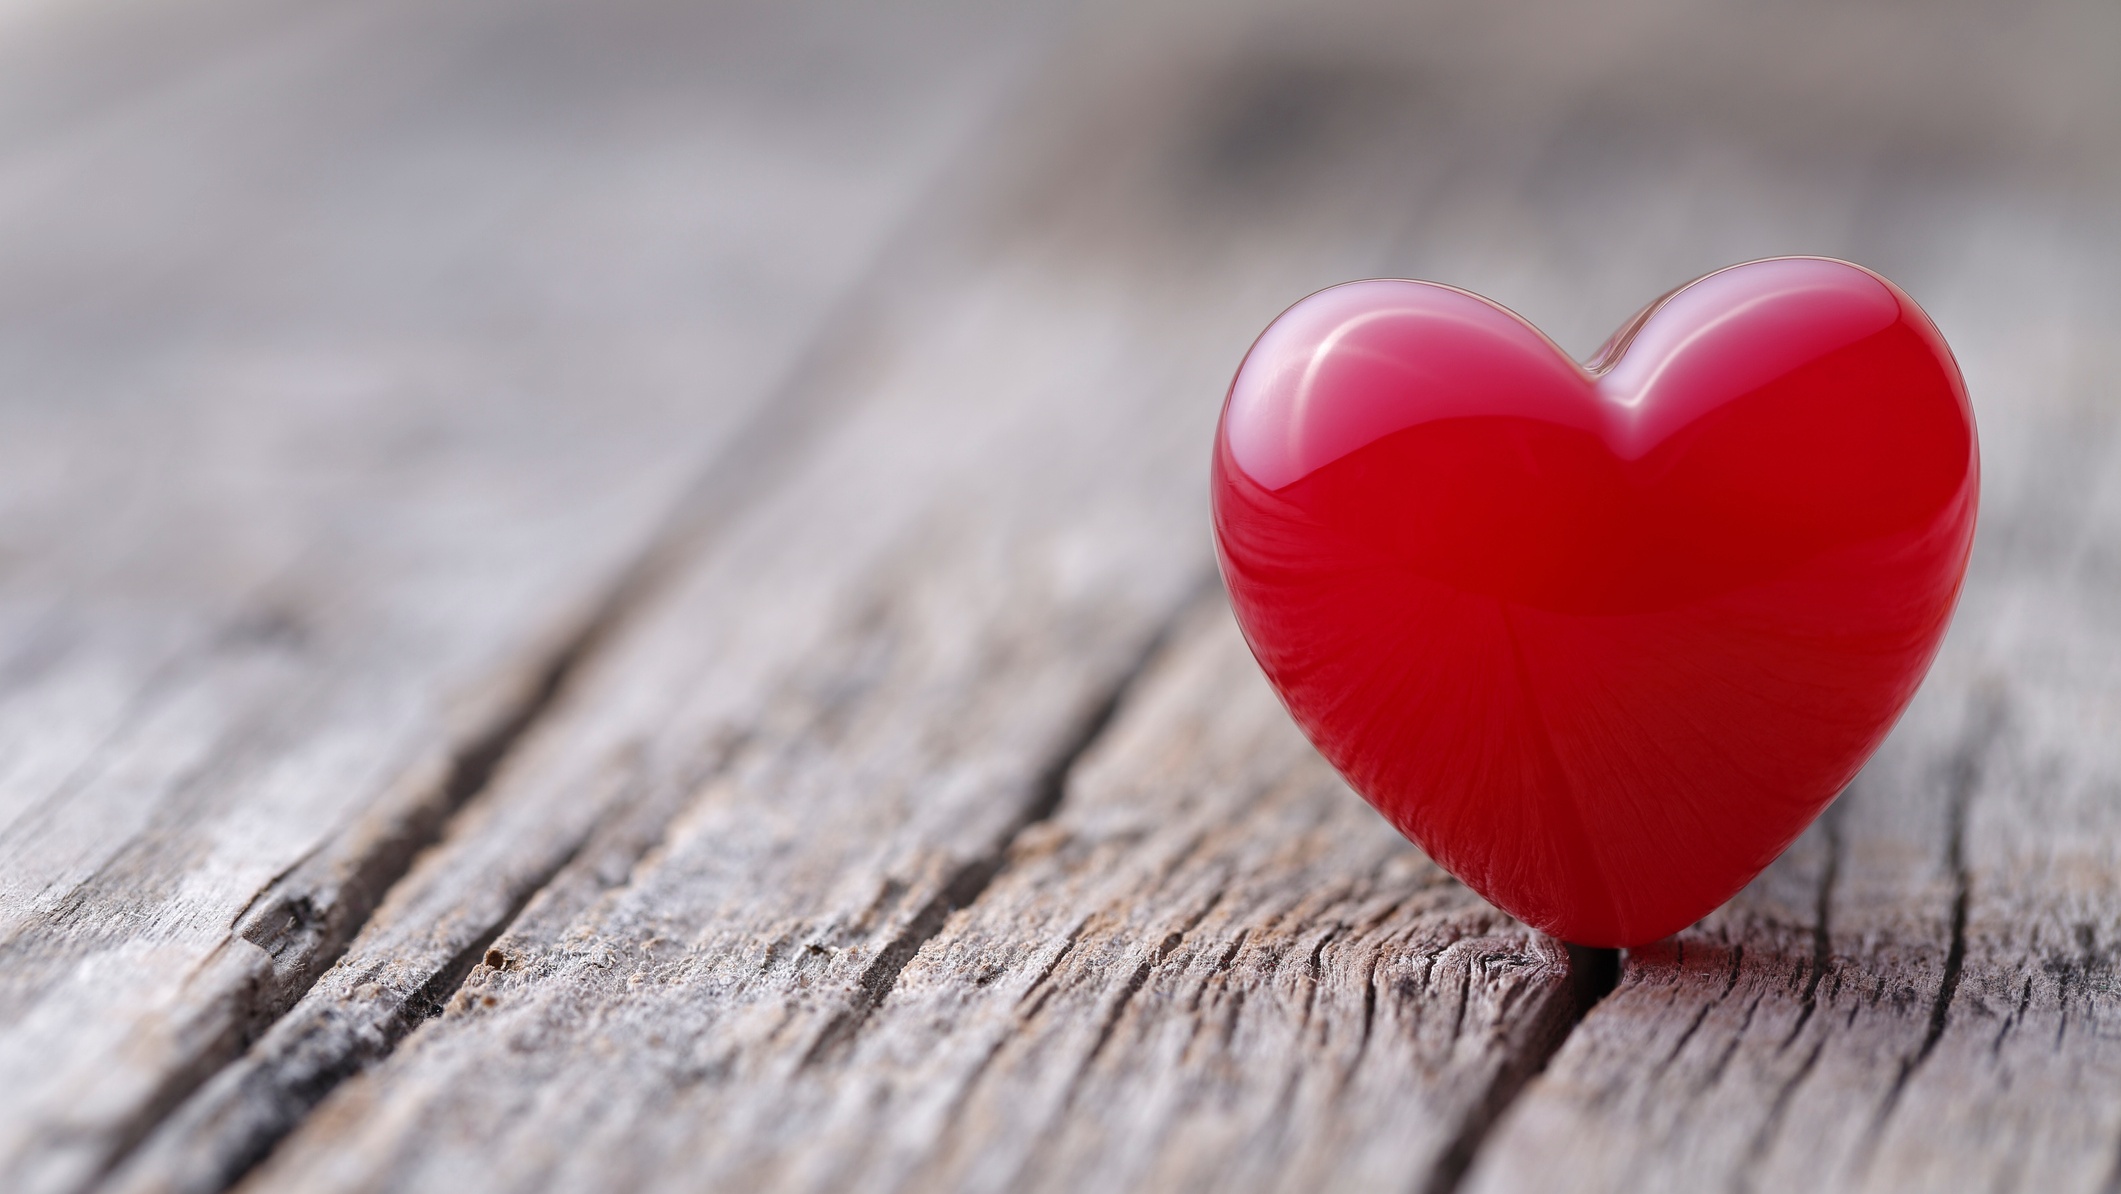 A puffadt gyomor nyomja a szívet | TermészetGyógyász Magazin